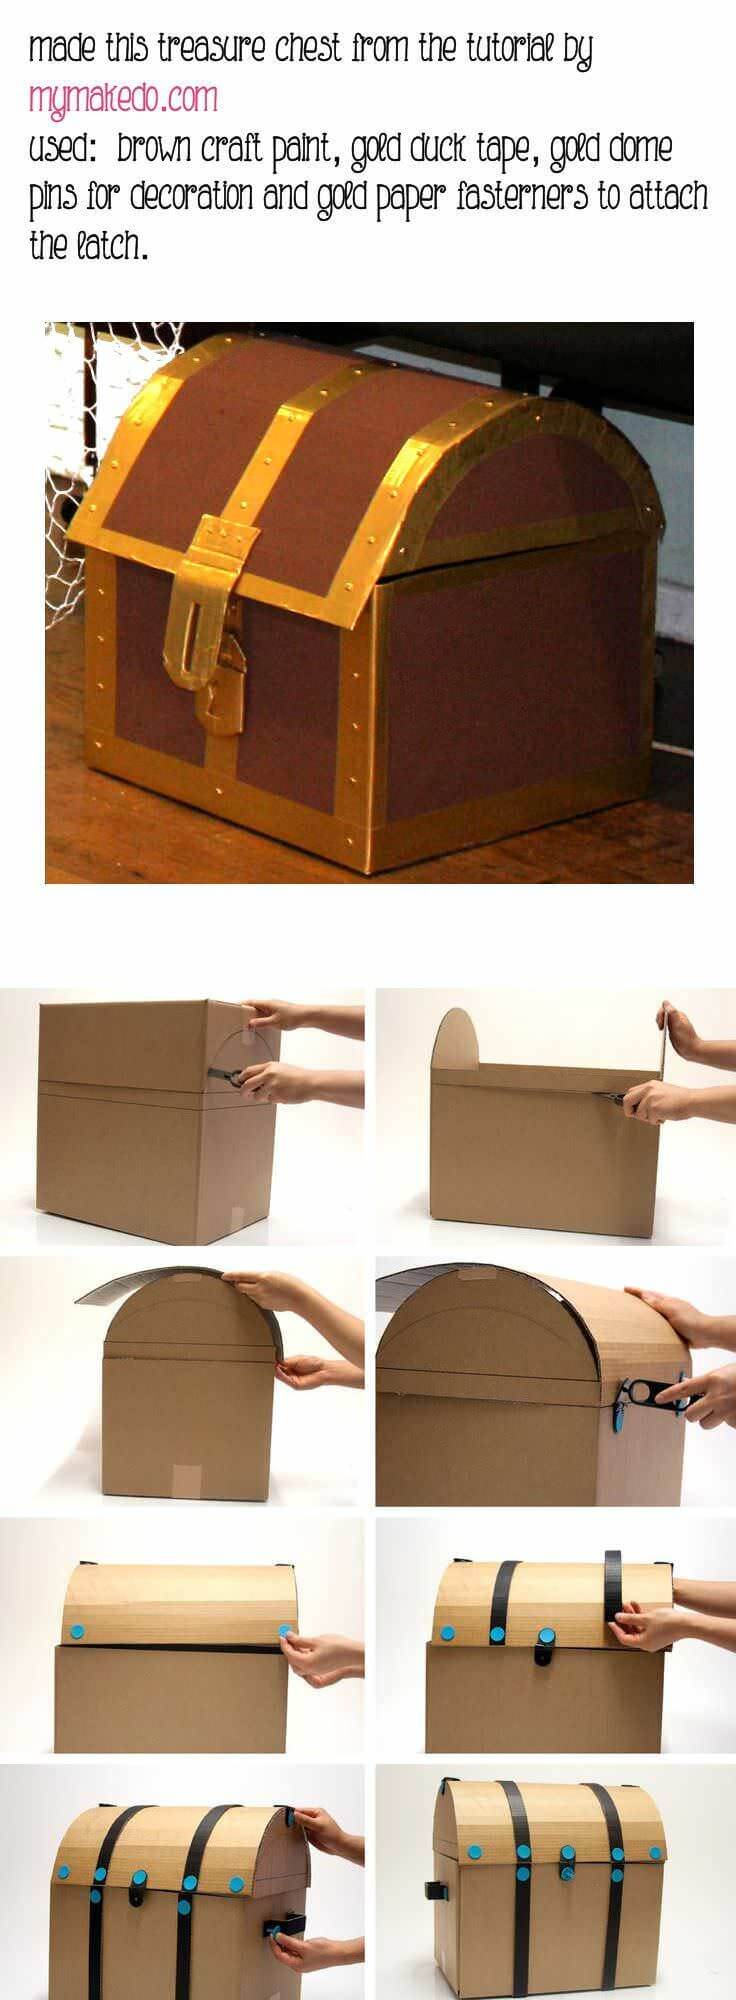 Cardboard craft ideas